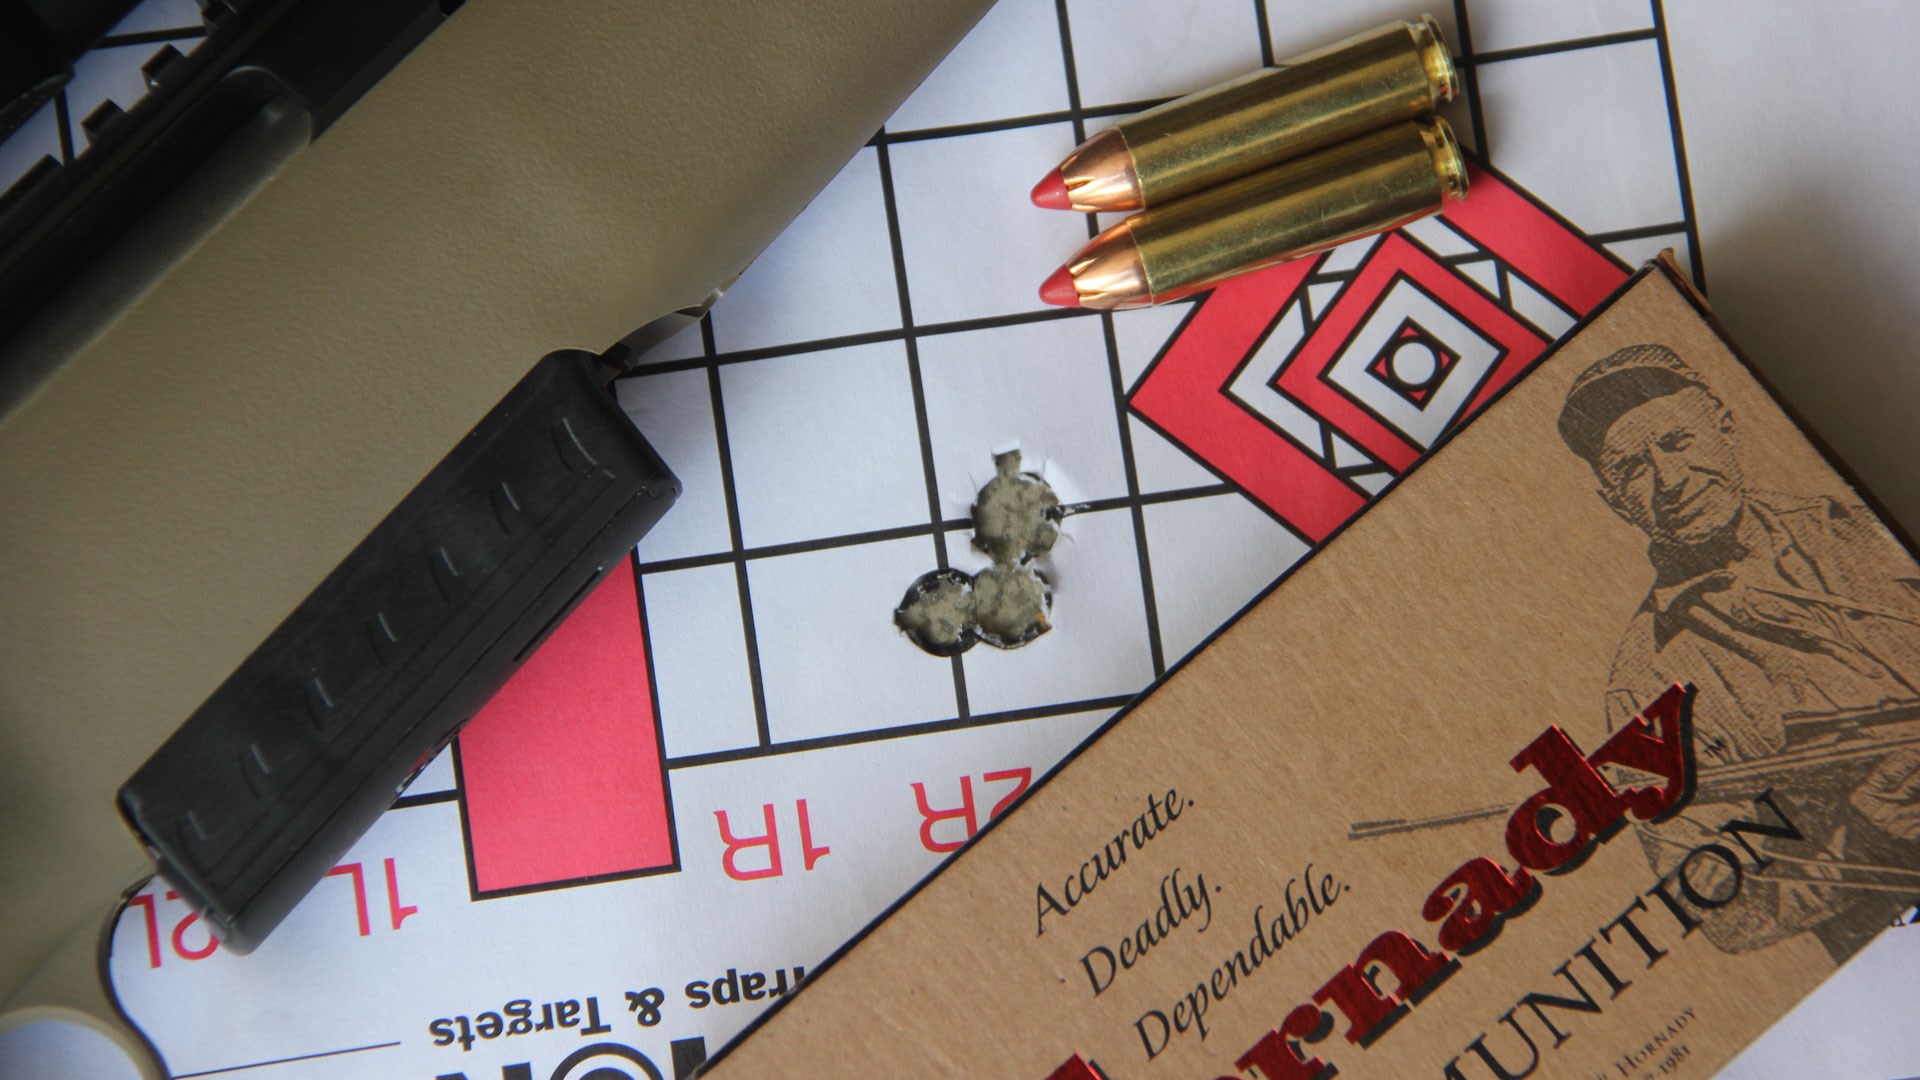 .450 Bushmaster cartridges alongside group